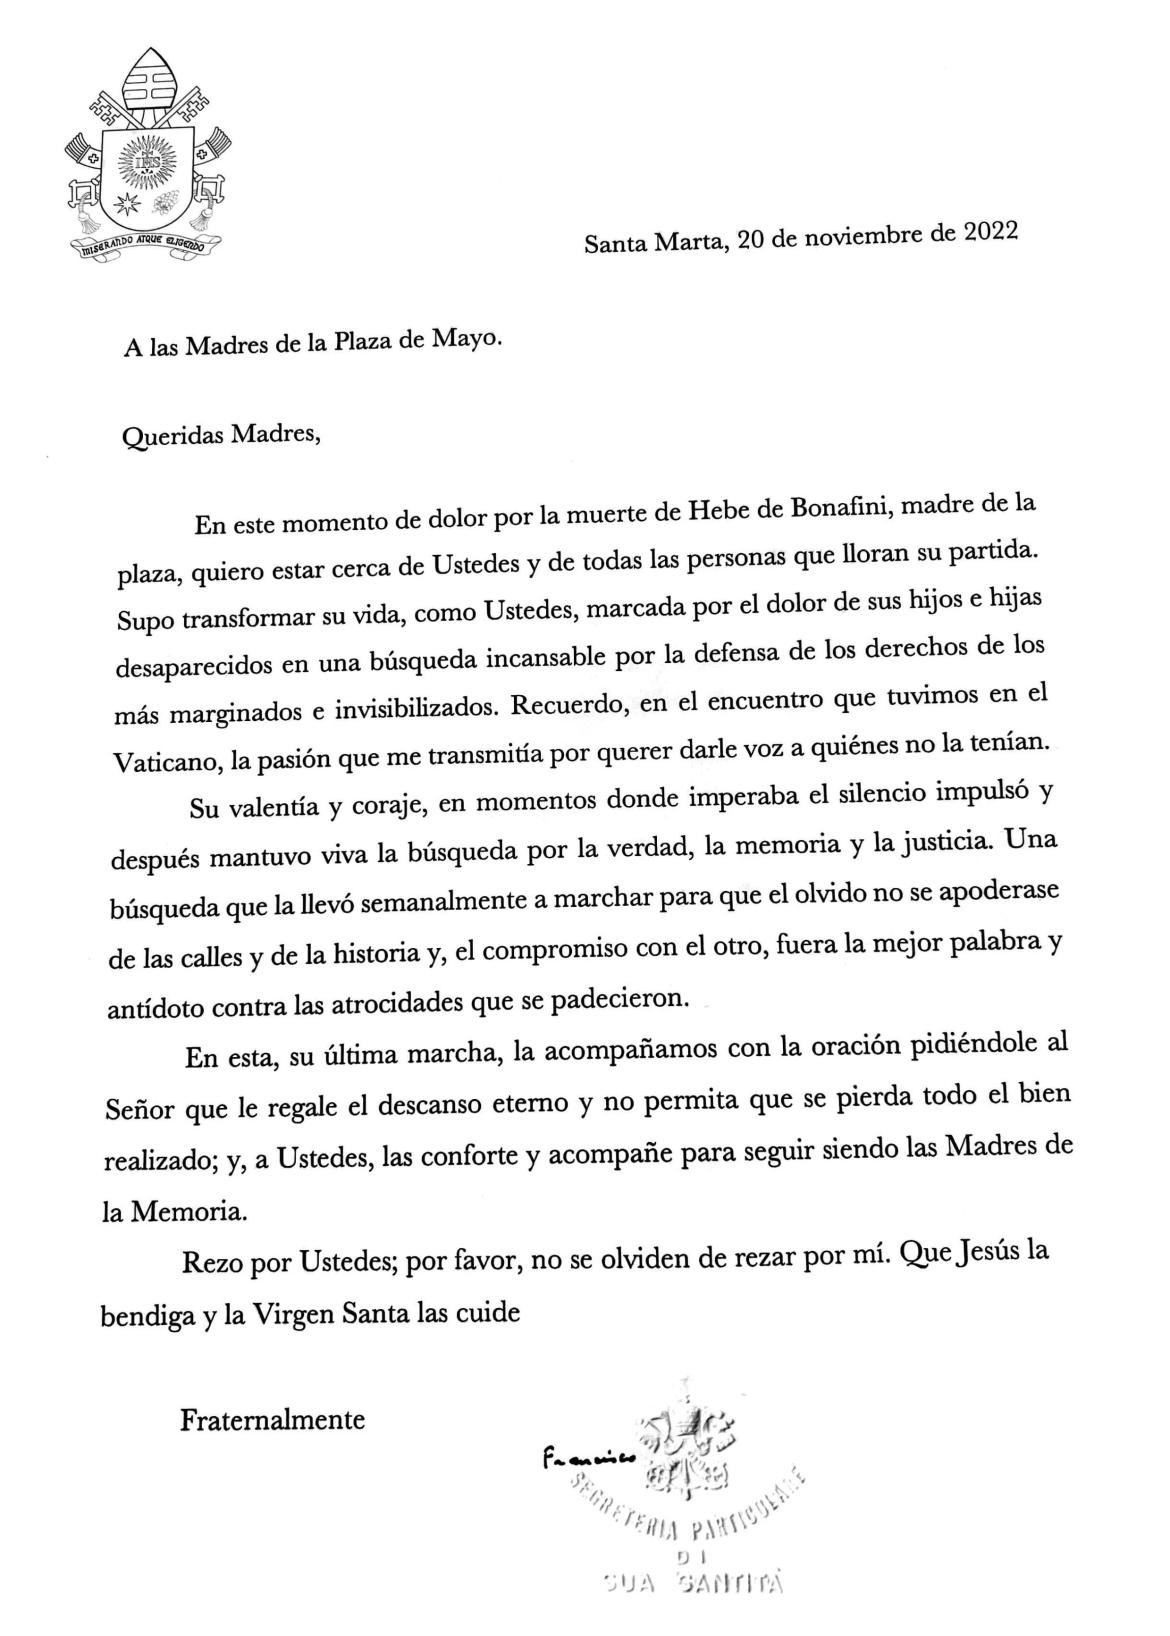 Carta del Papa Francisco, Hebe de Bonafini, NA